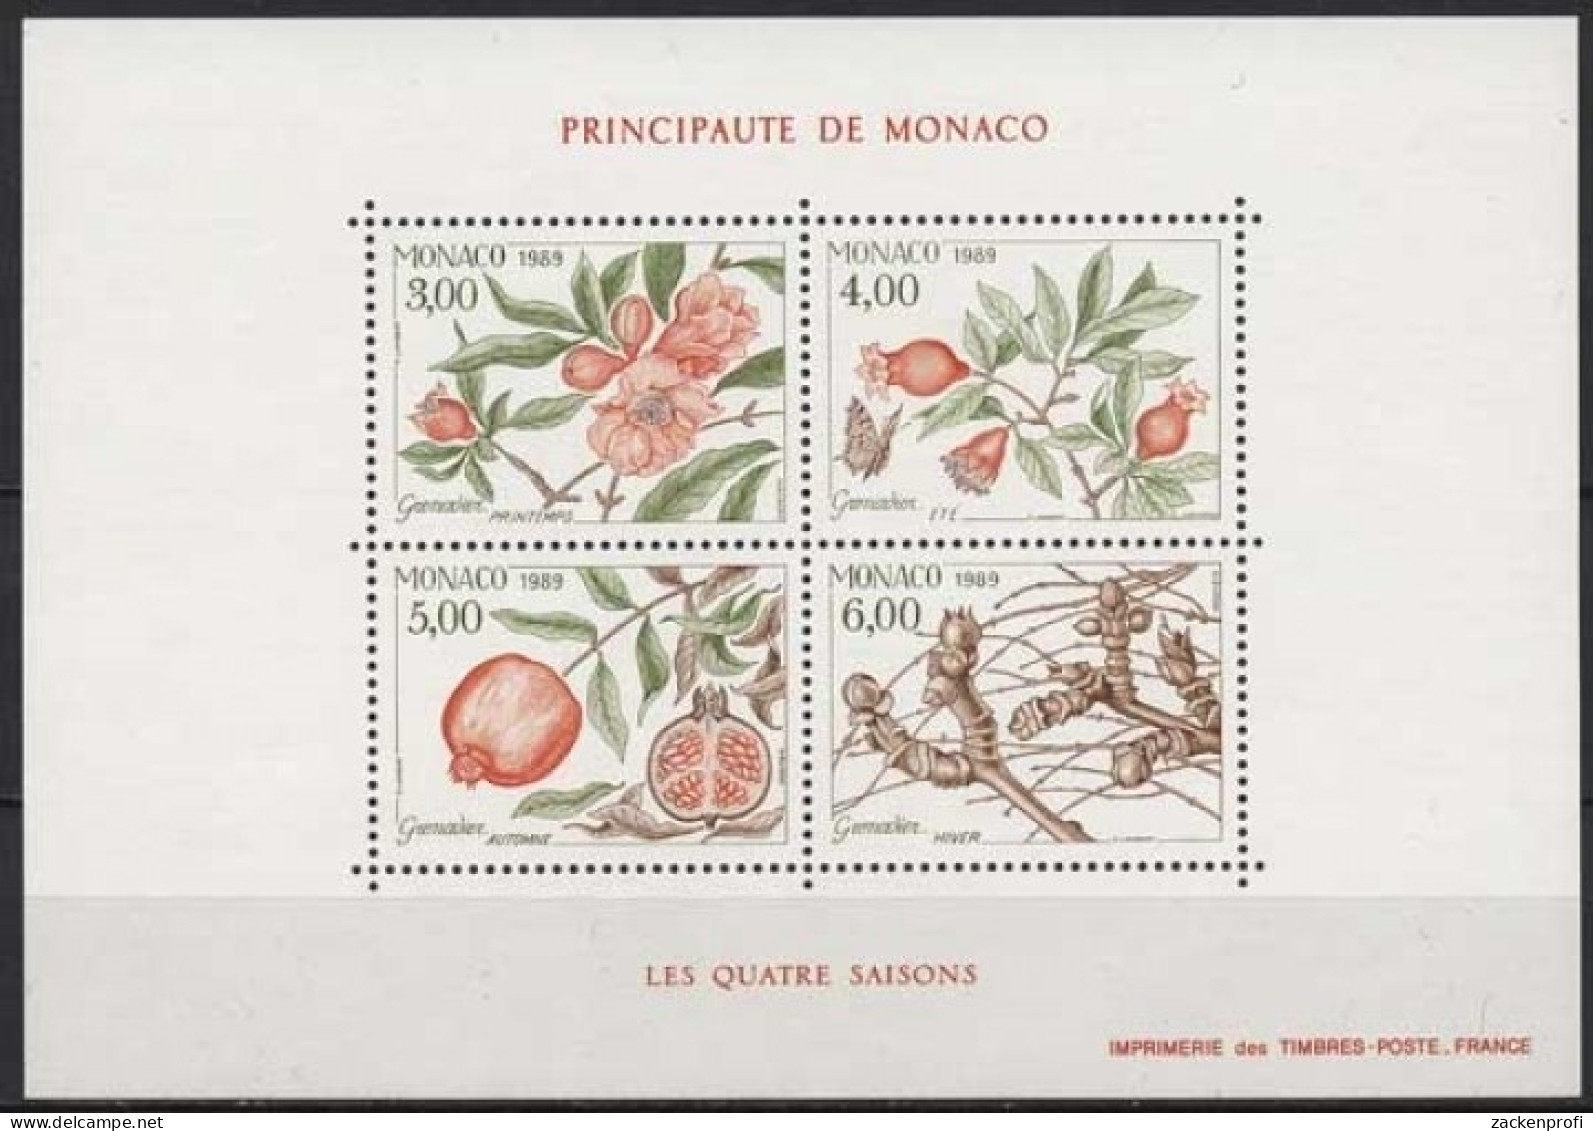 Monaco 1989 Vier Jahreszeiten Granatapfelbaum Block 42 Postfrisch (C91351) - Blocks & Kleinbögen